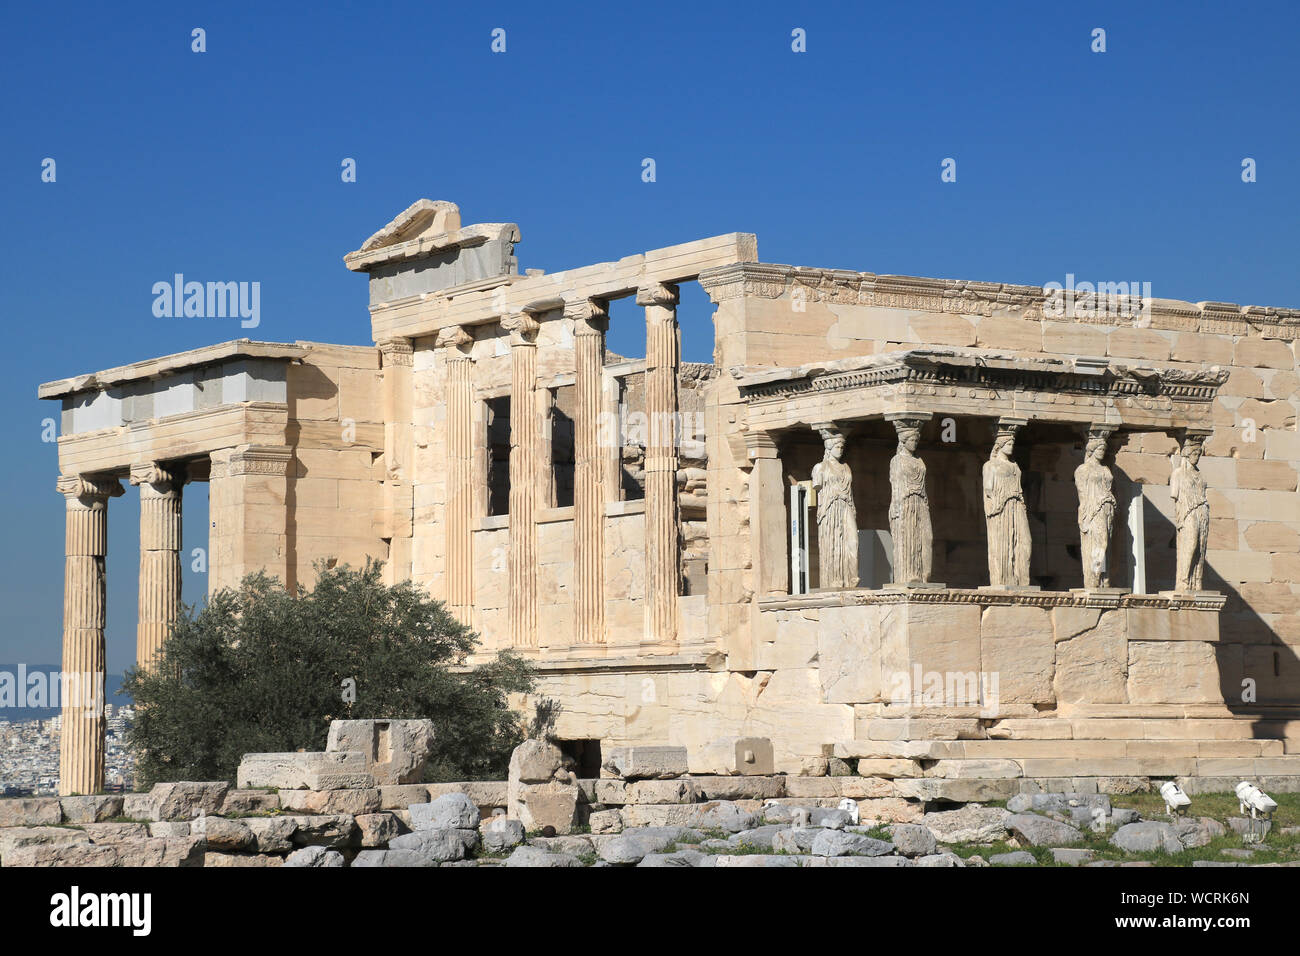 Erechtheion - Acropolis of Athens Stock Photo